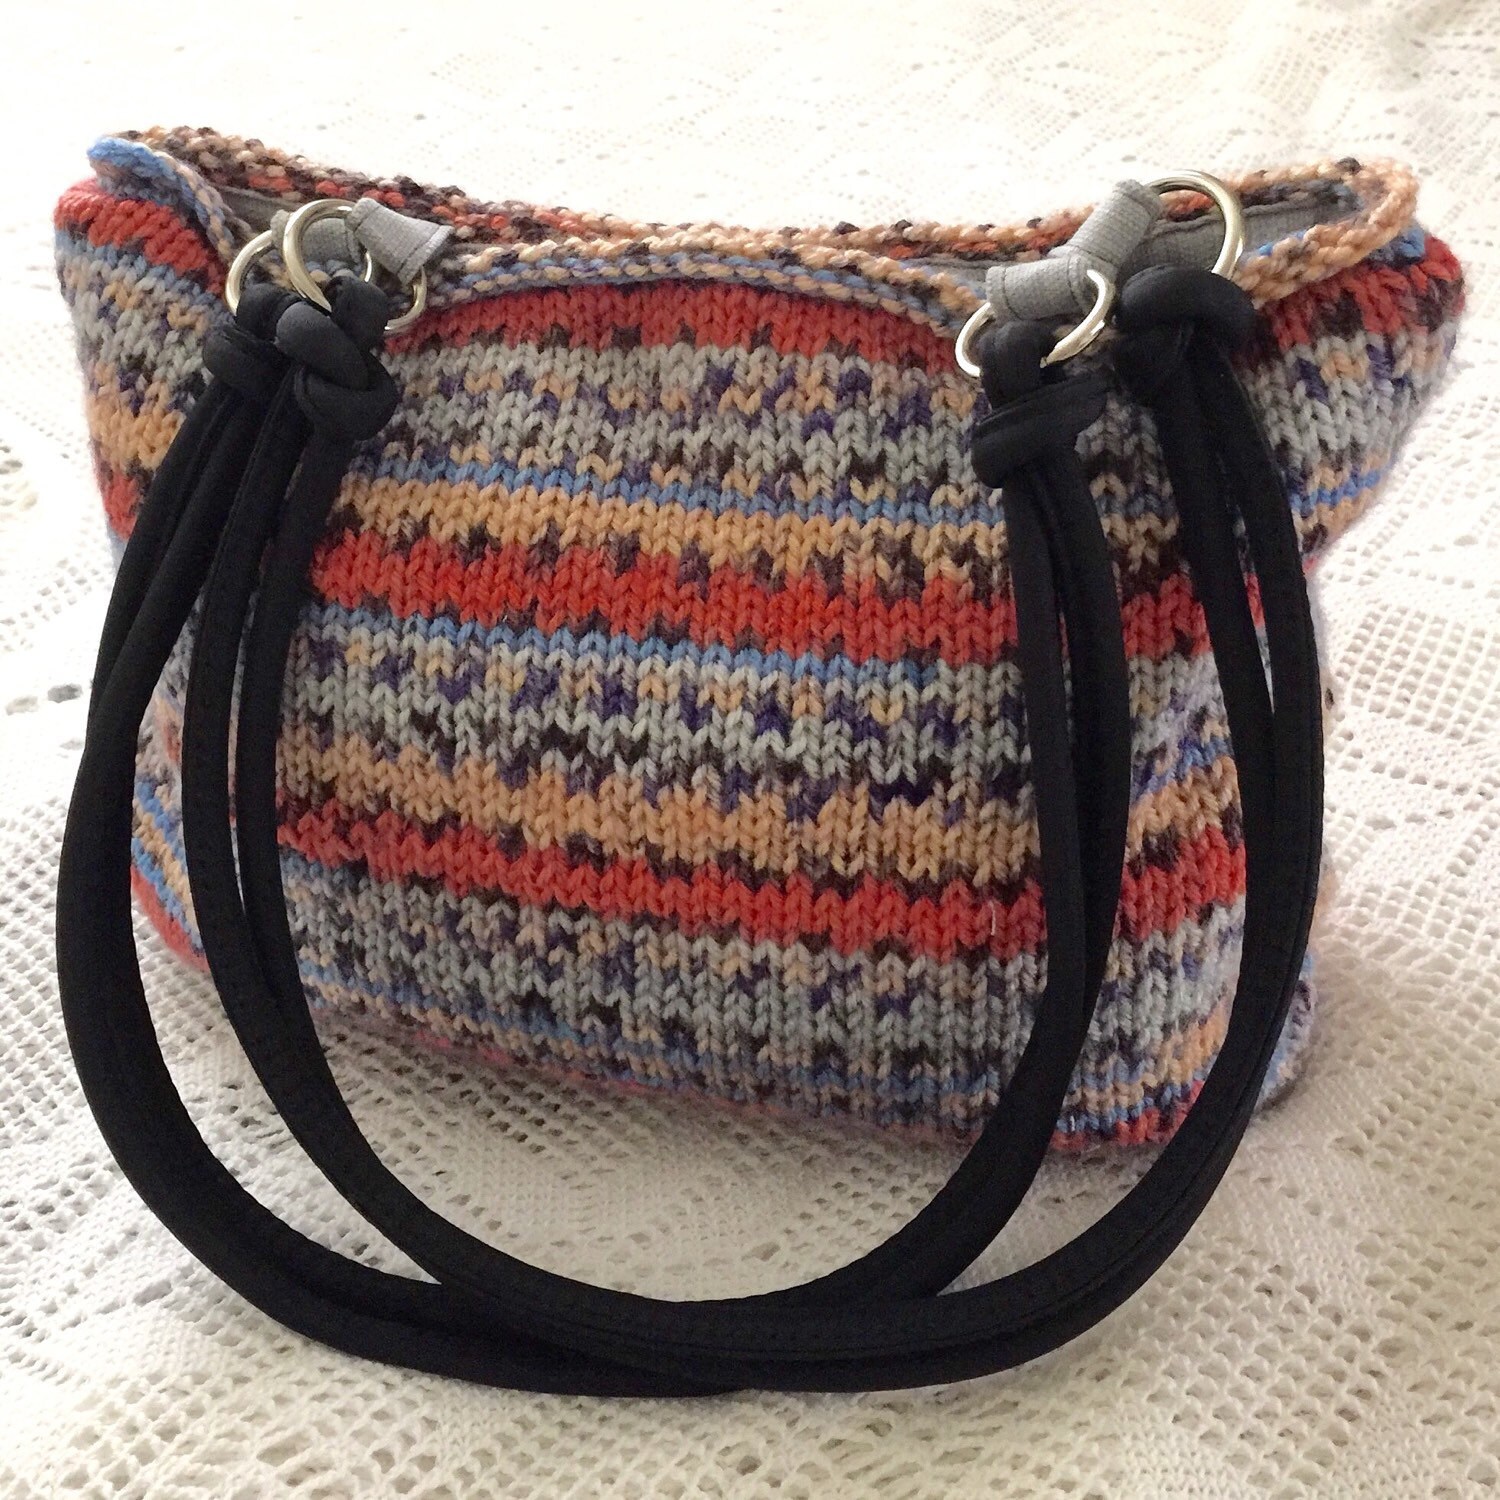 Knitted Shoulder Bag or Tote